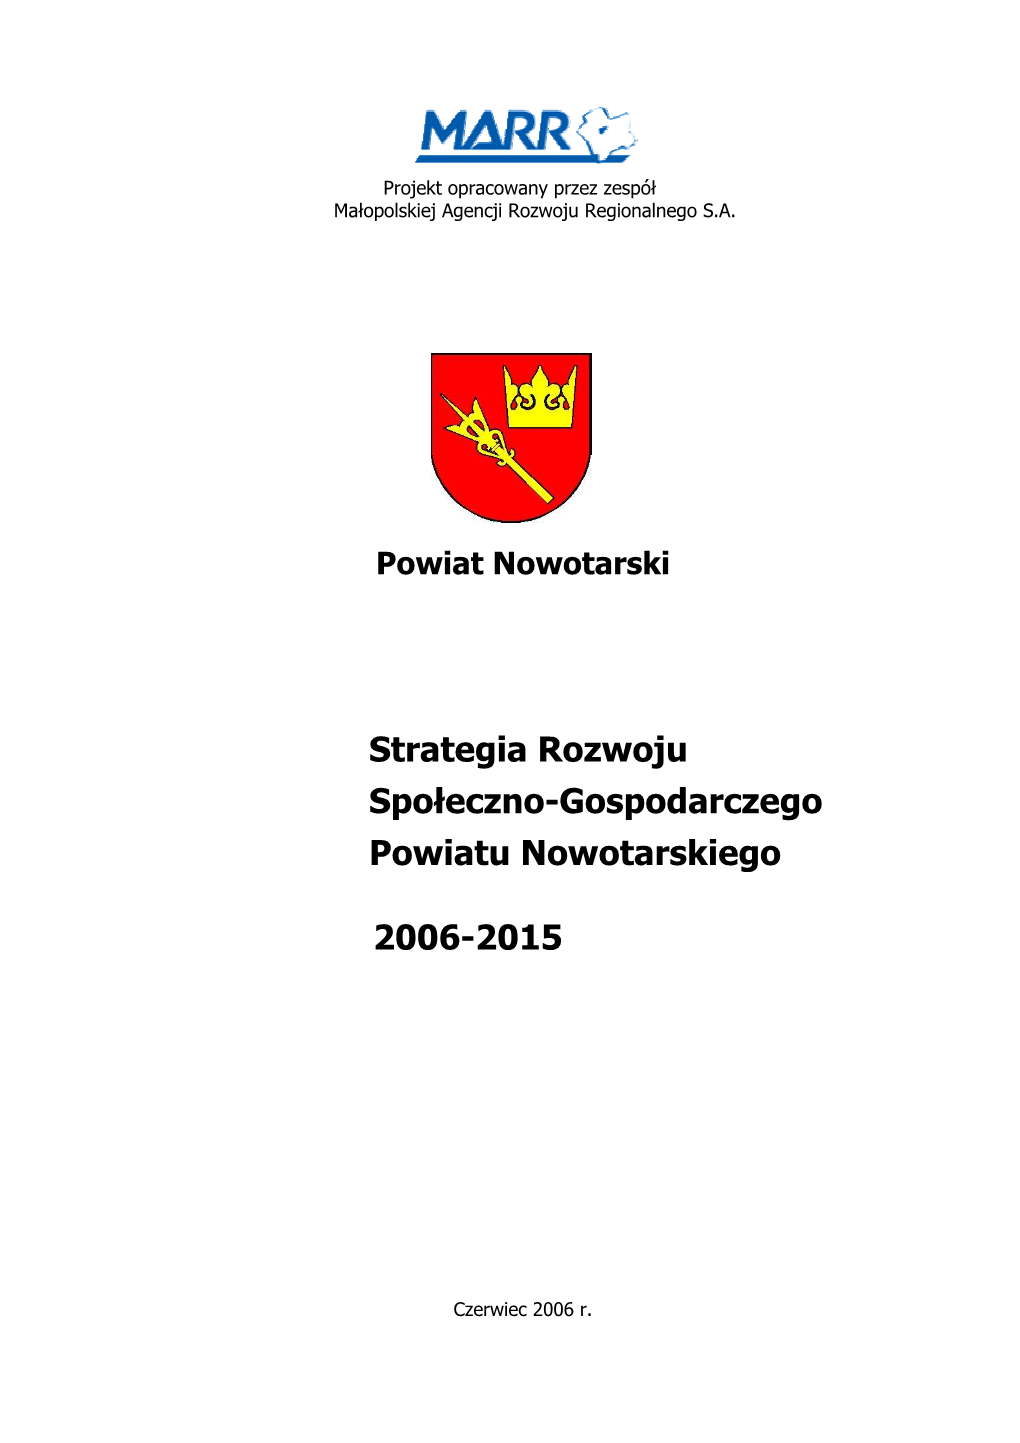 Strategia Rozwoju Powiatu Nowotarskiego Na Lata 2006-2015